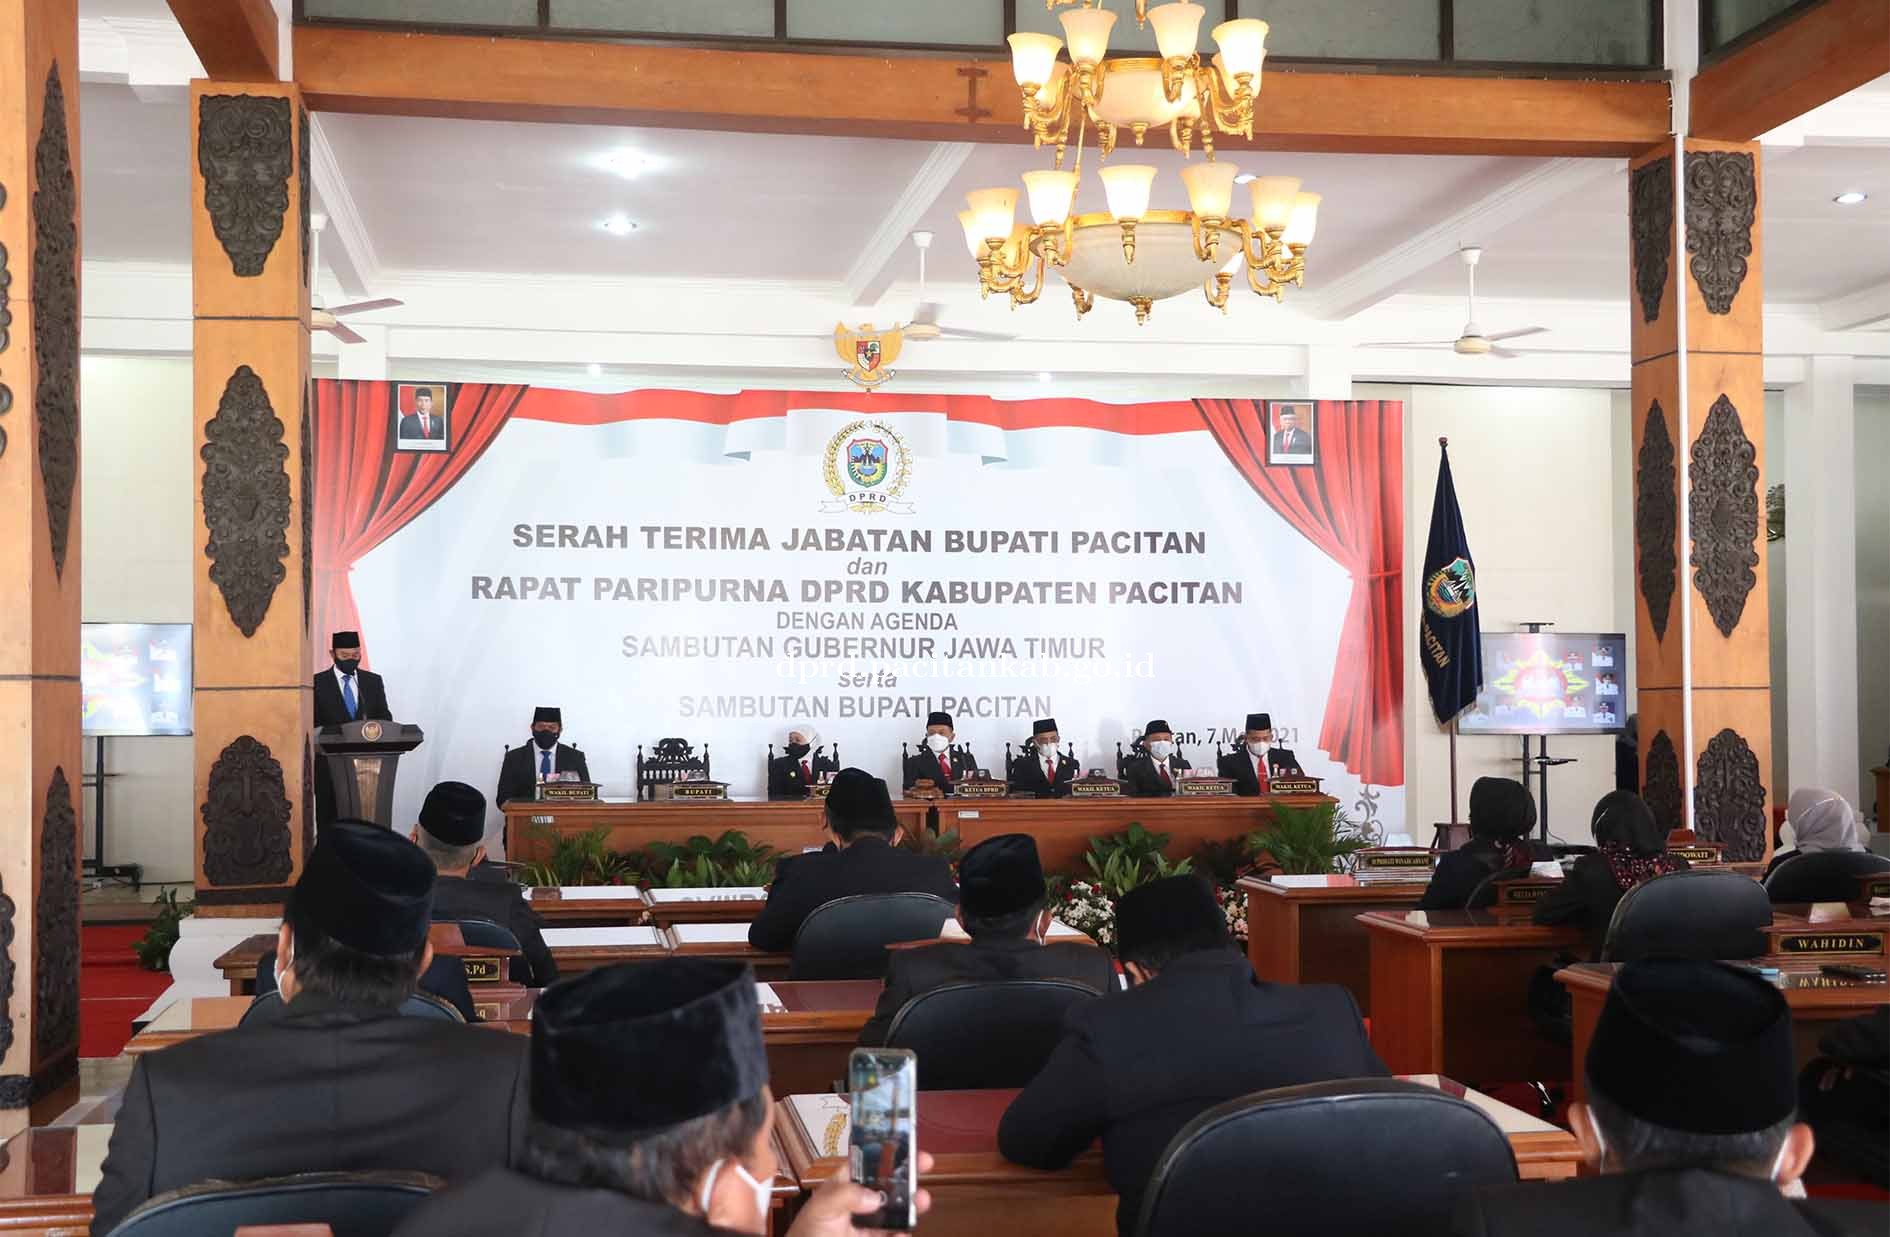 Bupati Terpilih Sampaikan Pidato Perdana Di Hadapan Wakil Rakyat 